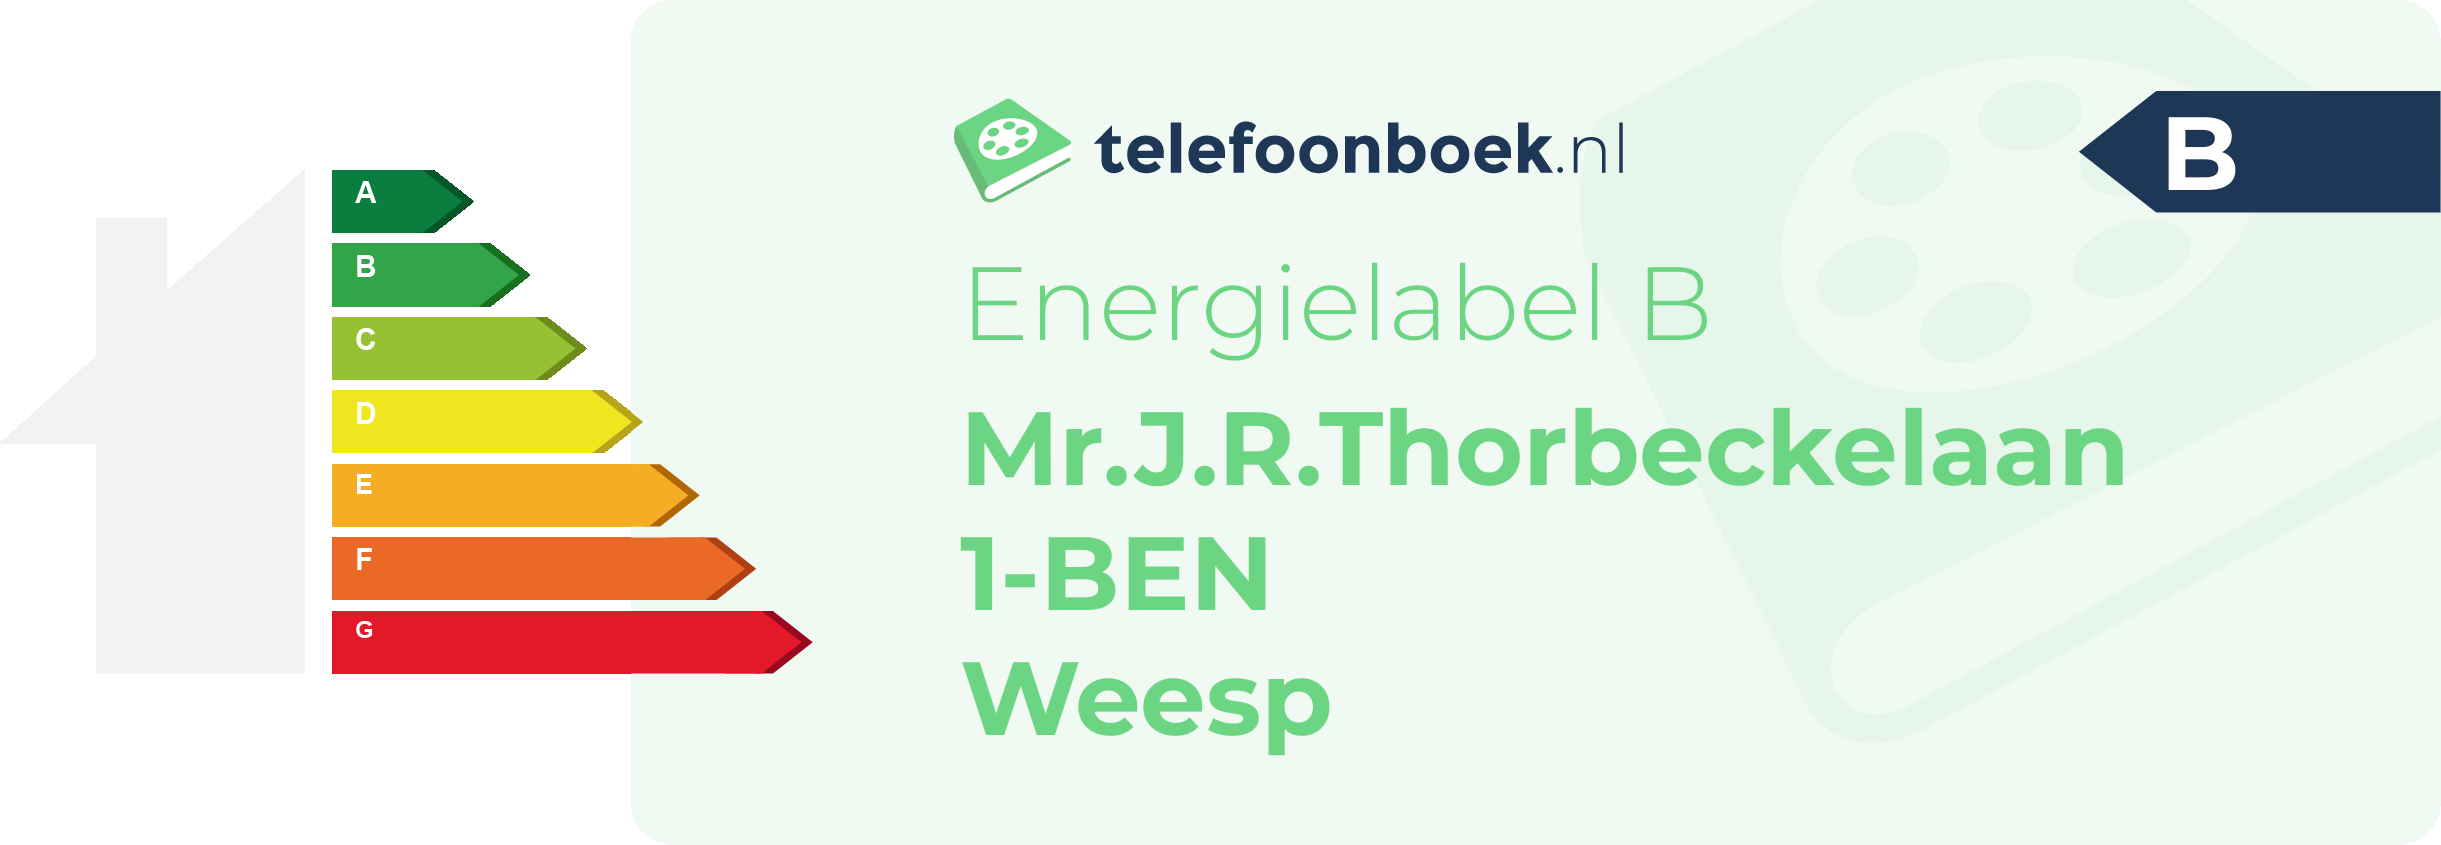 Energielabel Mr.J.R.Thorbeckelaan 1-BEN Weesp